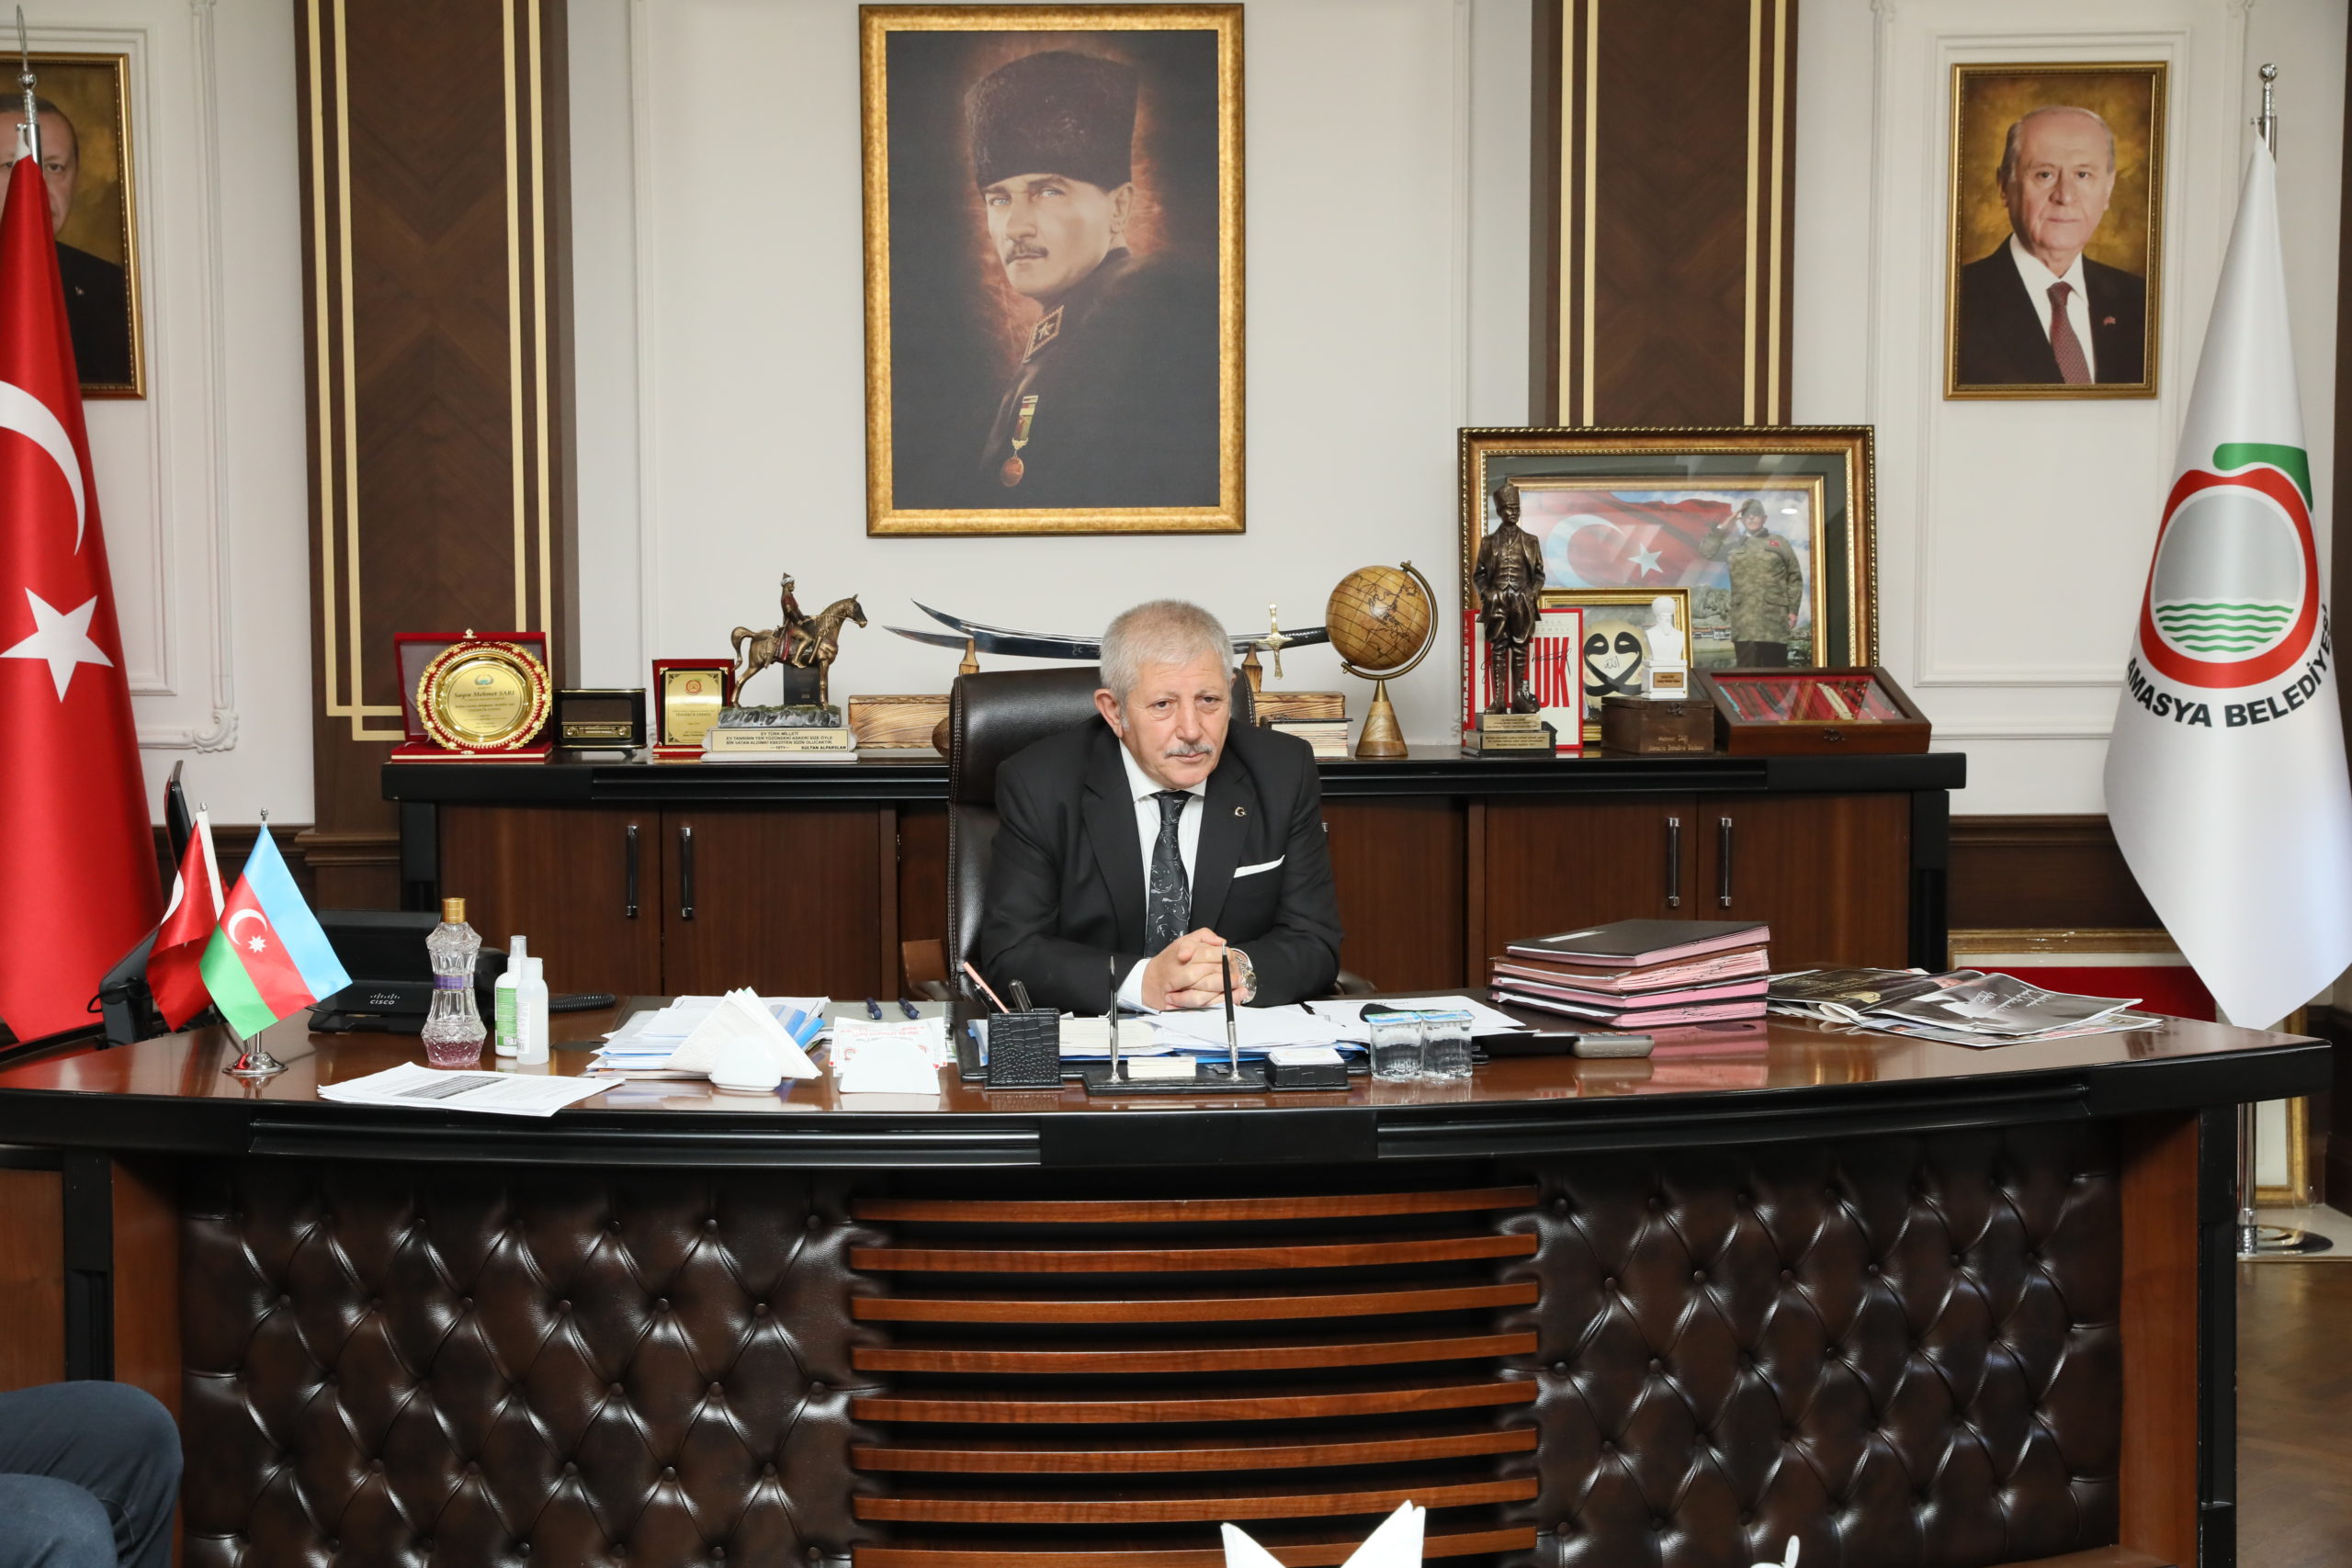  Amasya Belediye Başkanı Sarı: Bayramlar Ortak Değerimiz, Birlik ve Beraberliğimizdir